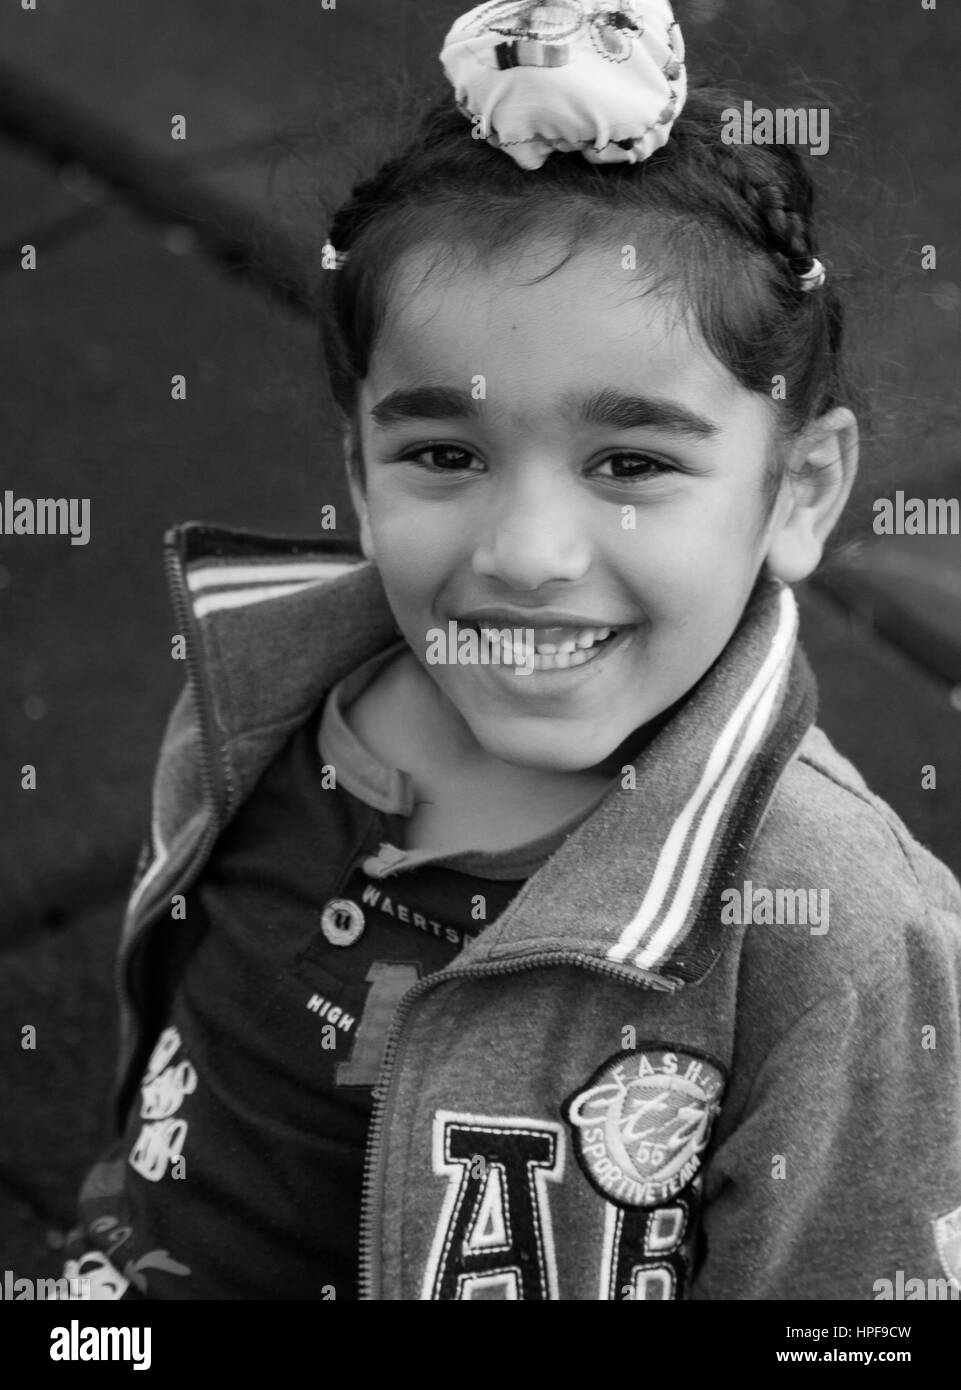 Indische oder Pakistany kleinen Jungen spielen im Park, bat um die Erlaubnis ihrer Eltern... nettes unschuldiges Kind Lächeln auf den Lippen. Stockfoto